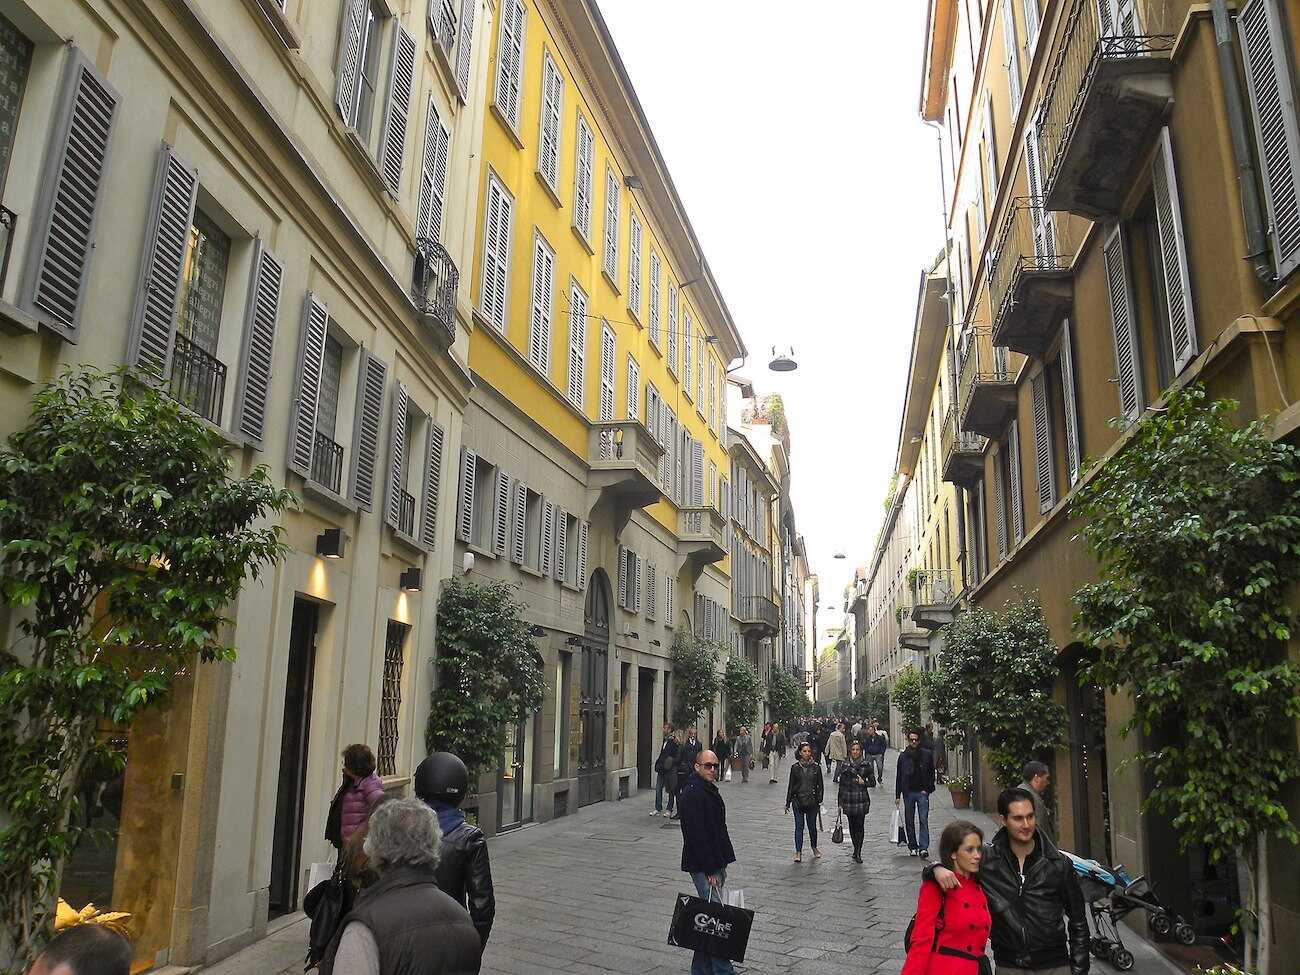 Via della Spiga in Milan Fashion District